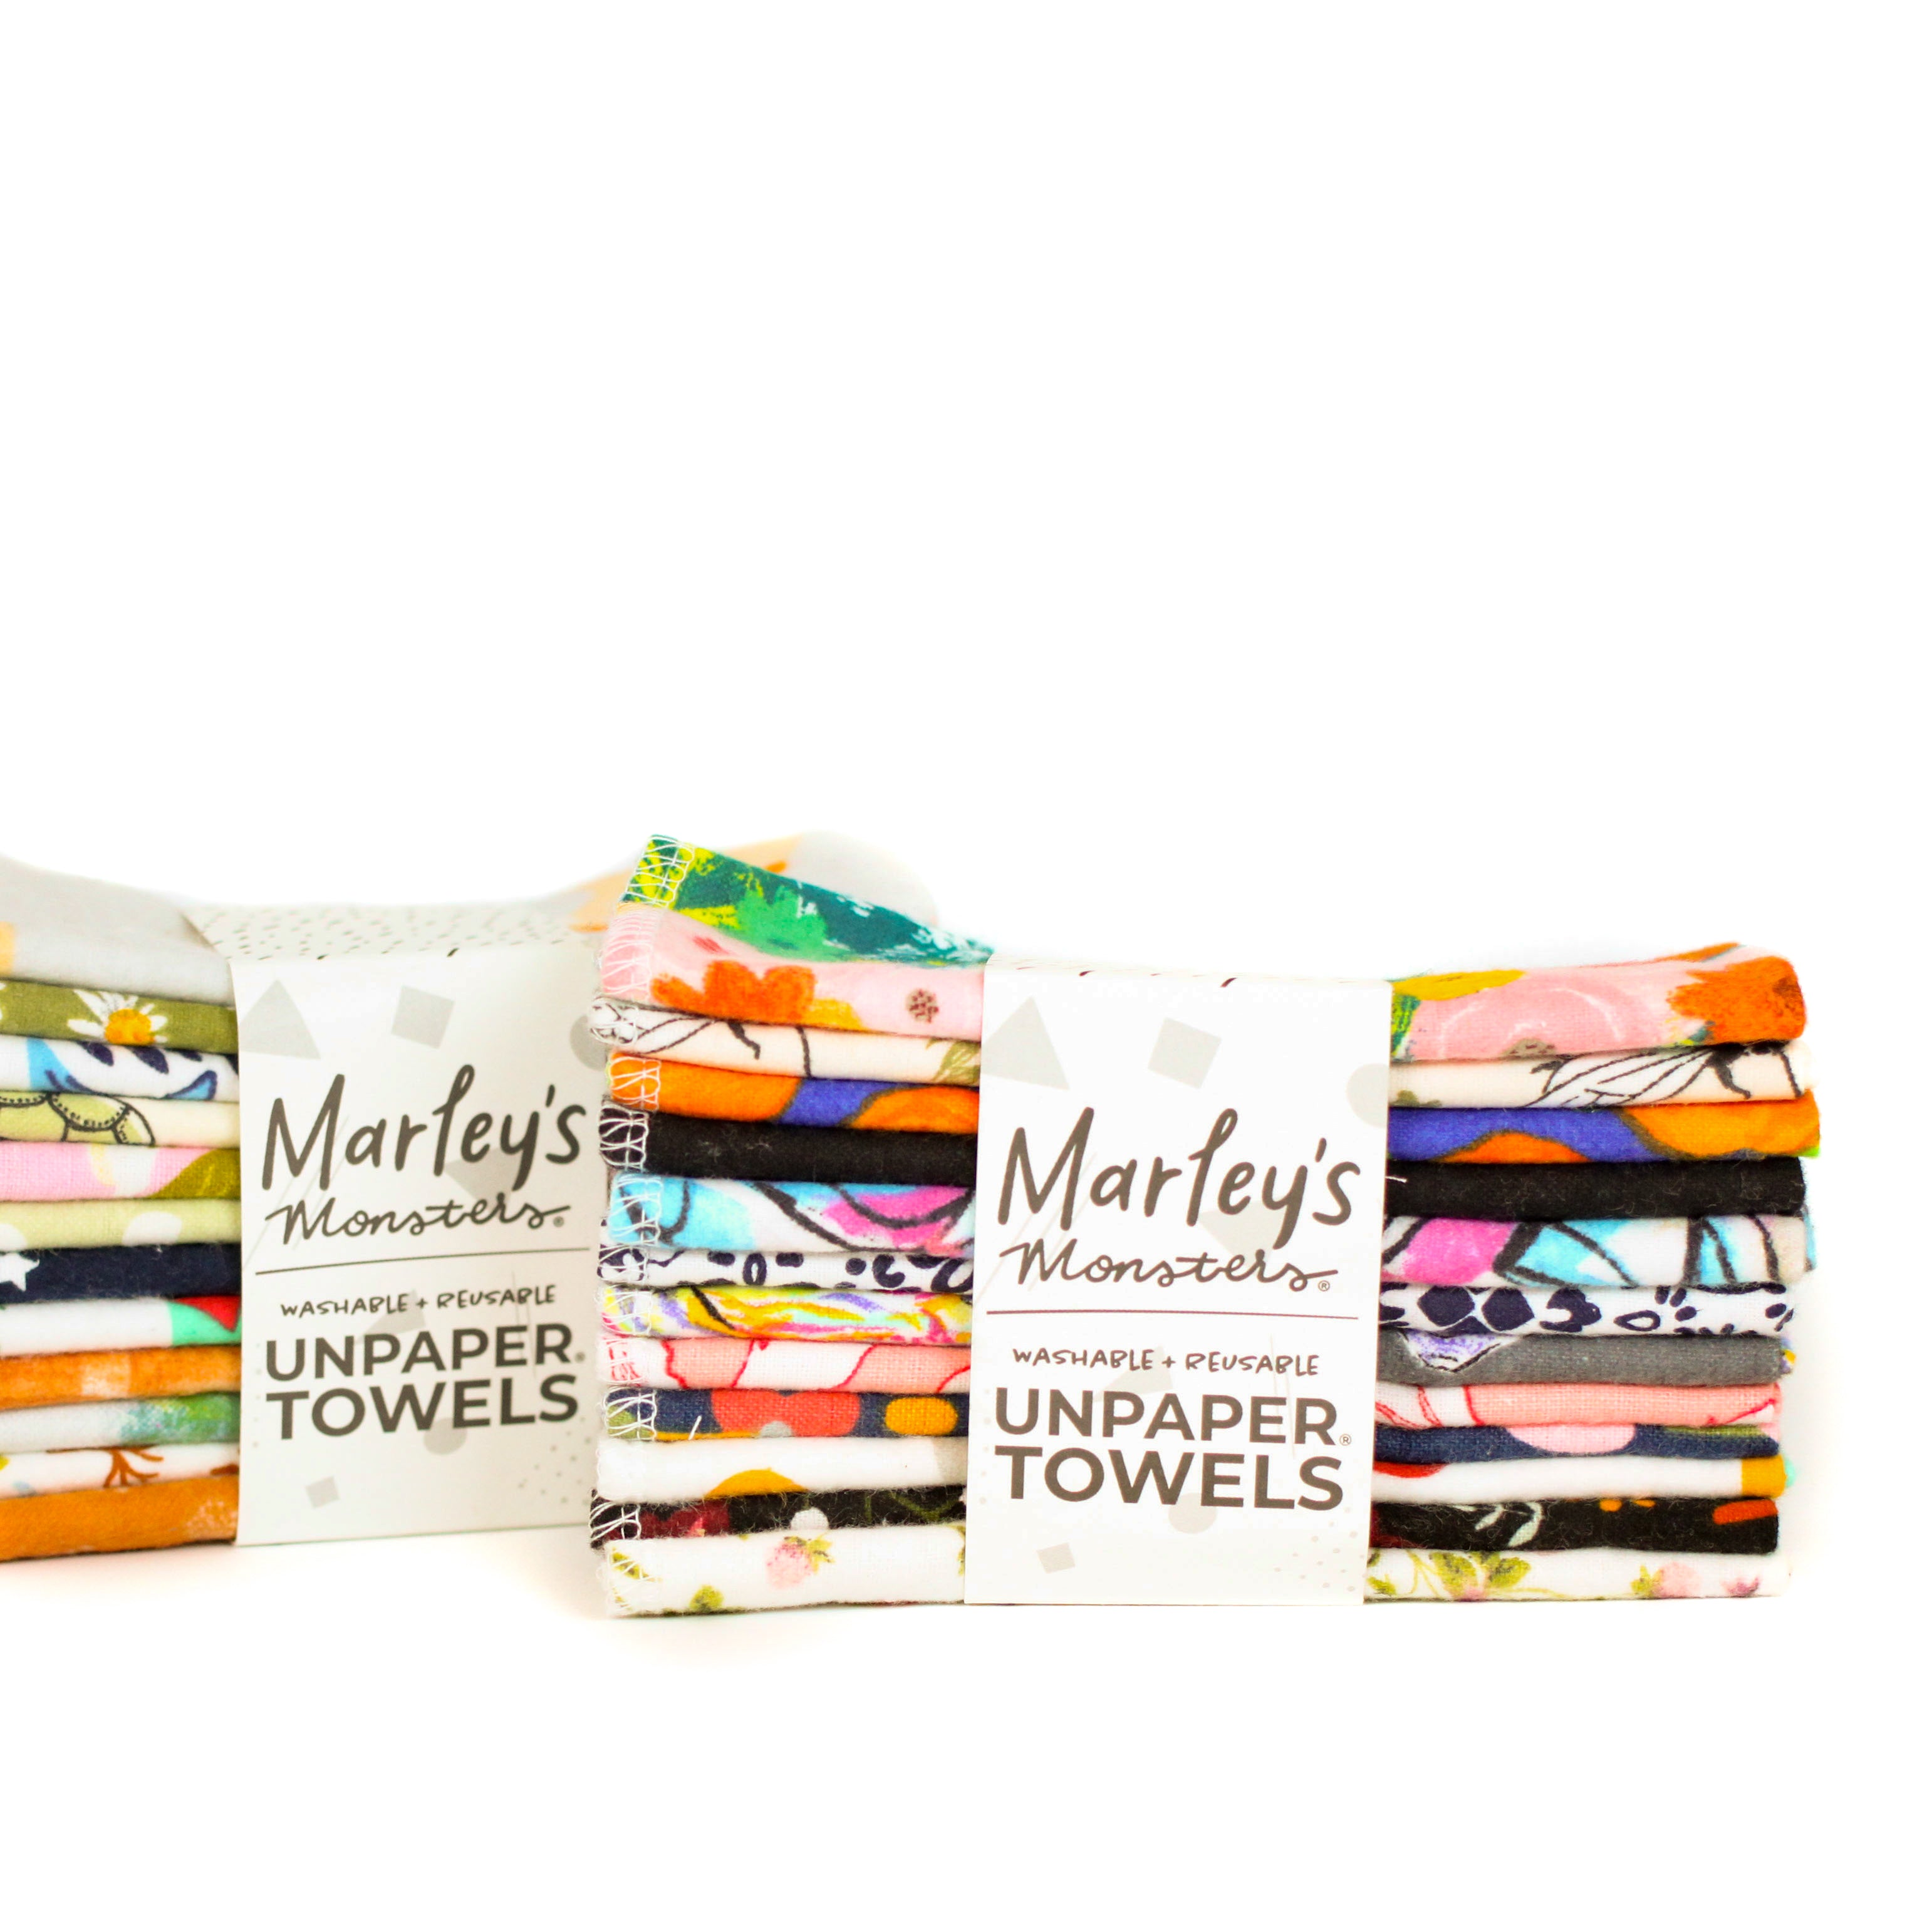 Marley's Monsters UNpaper Towels